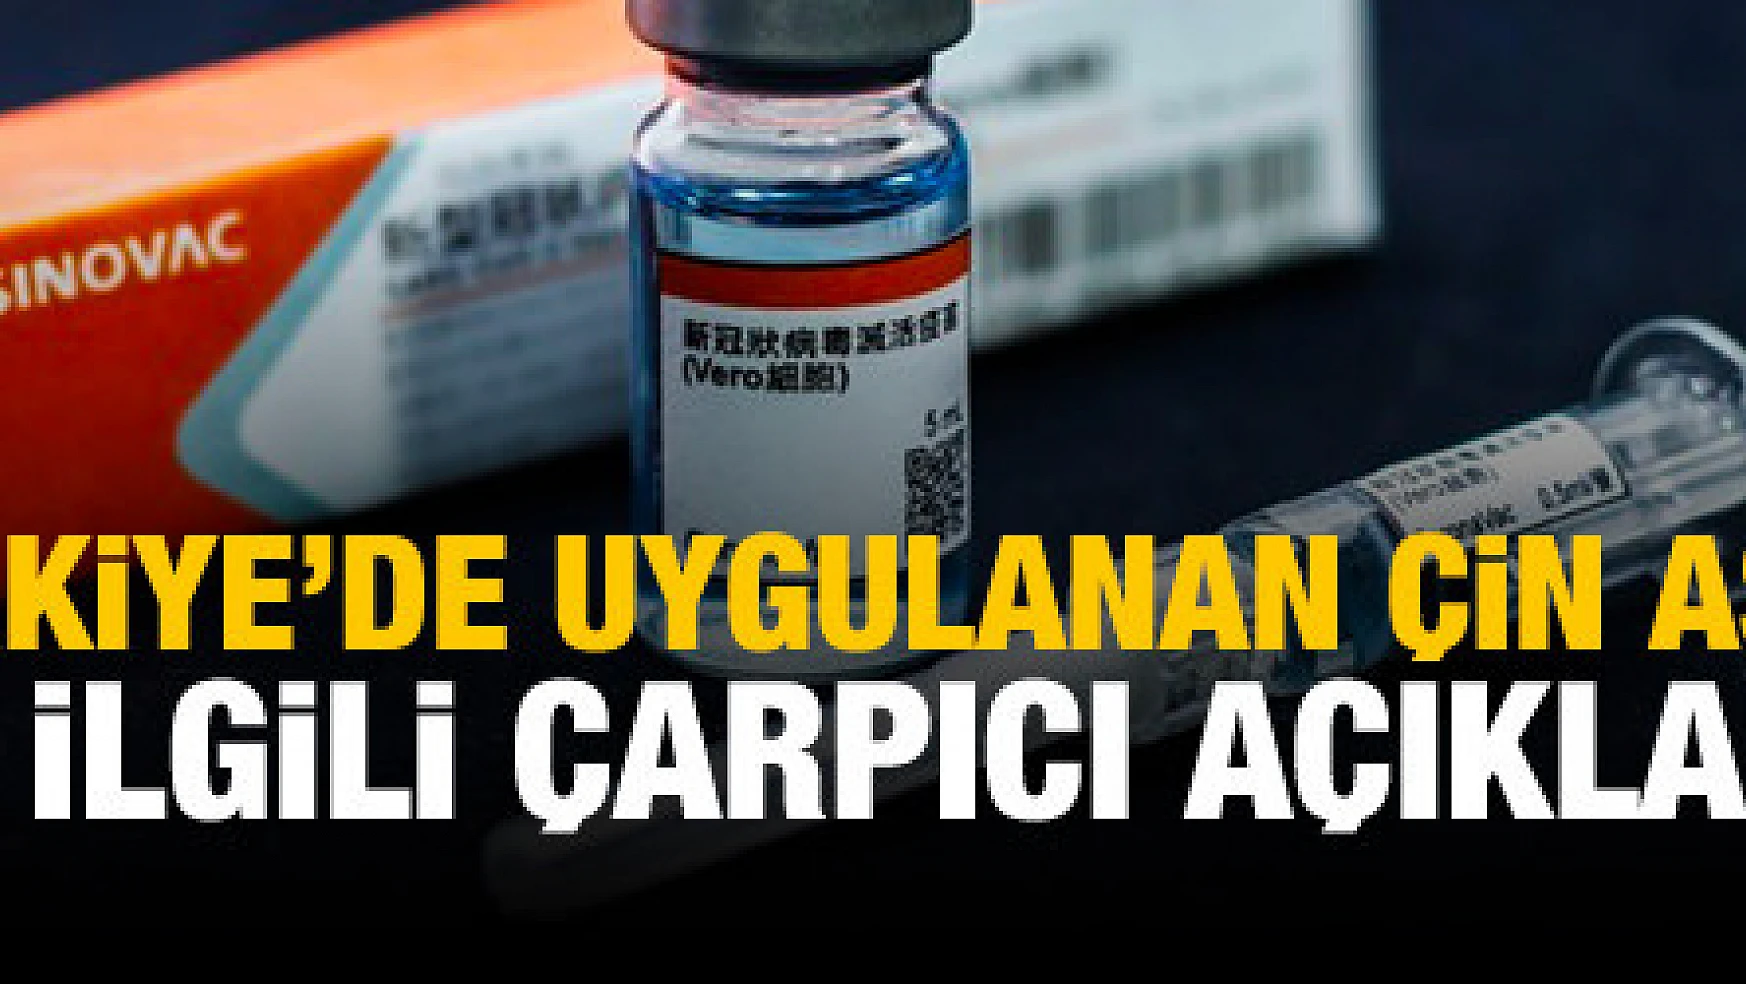 Türkiye'de uygulanan Çin aşıyla ilgili çarpıcı açıklama